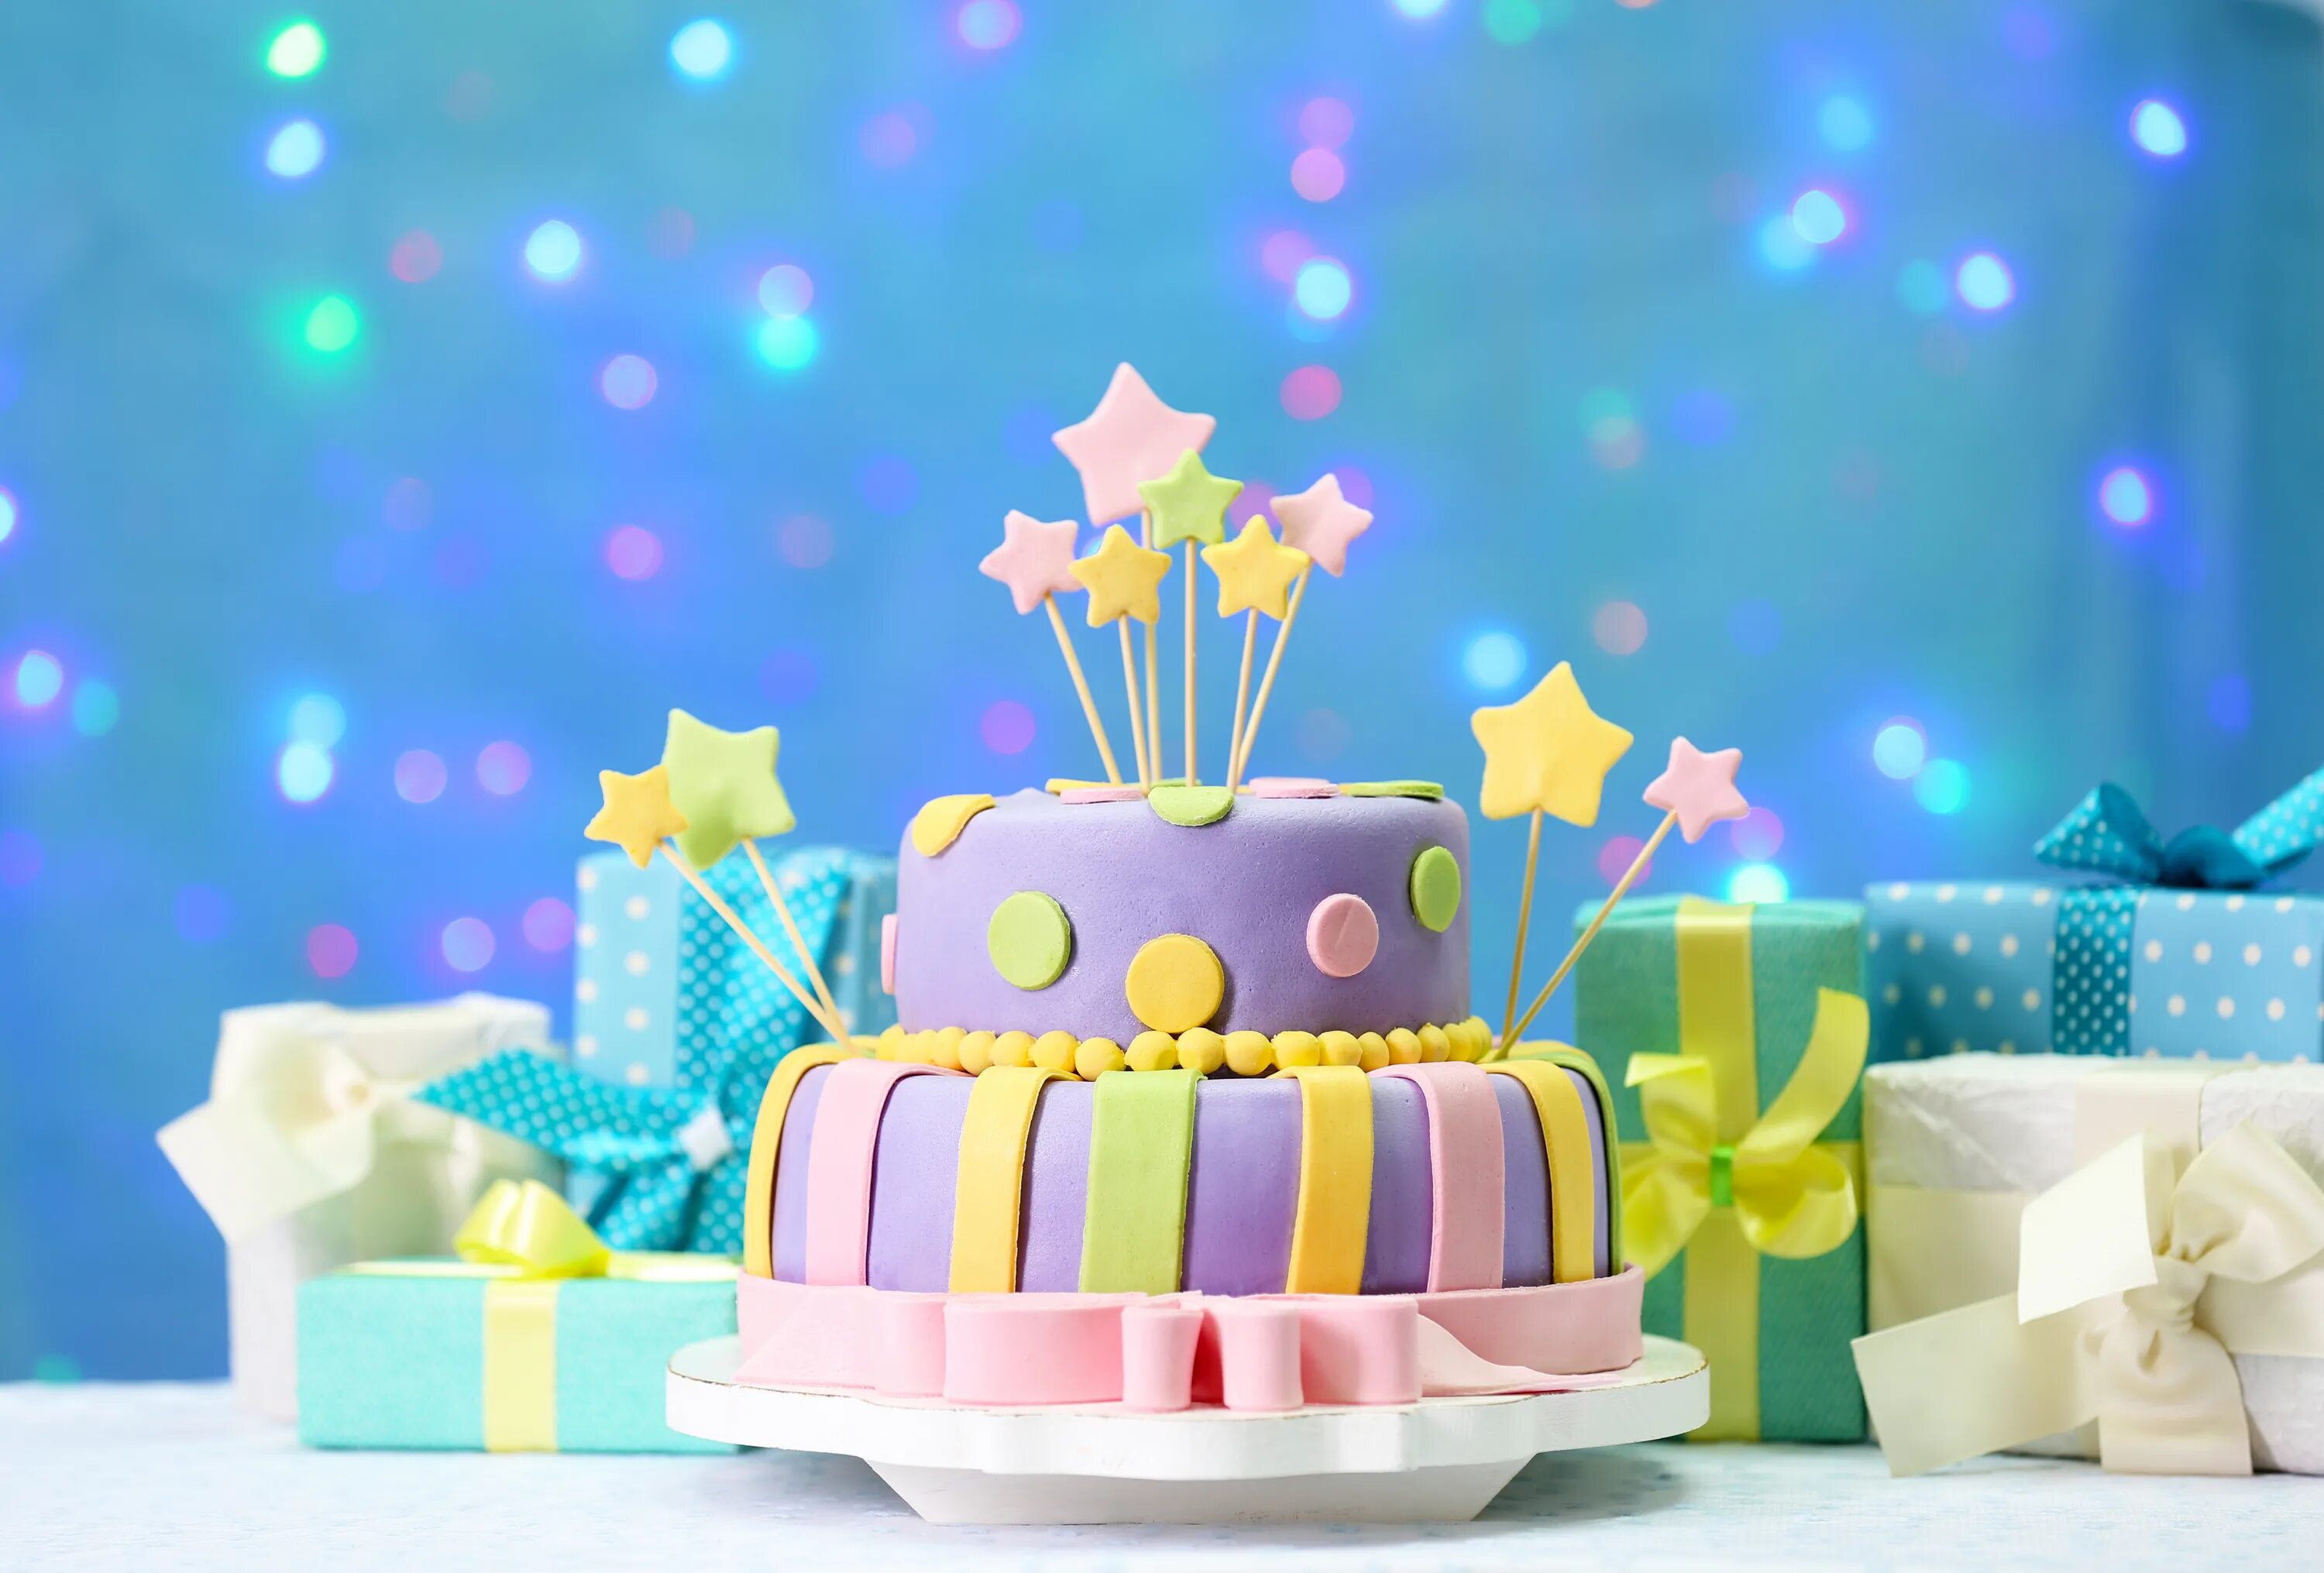 Тортик с днем рождения. Красивые тортики на день рождения. Подарок торт красивый. Шары на торте.